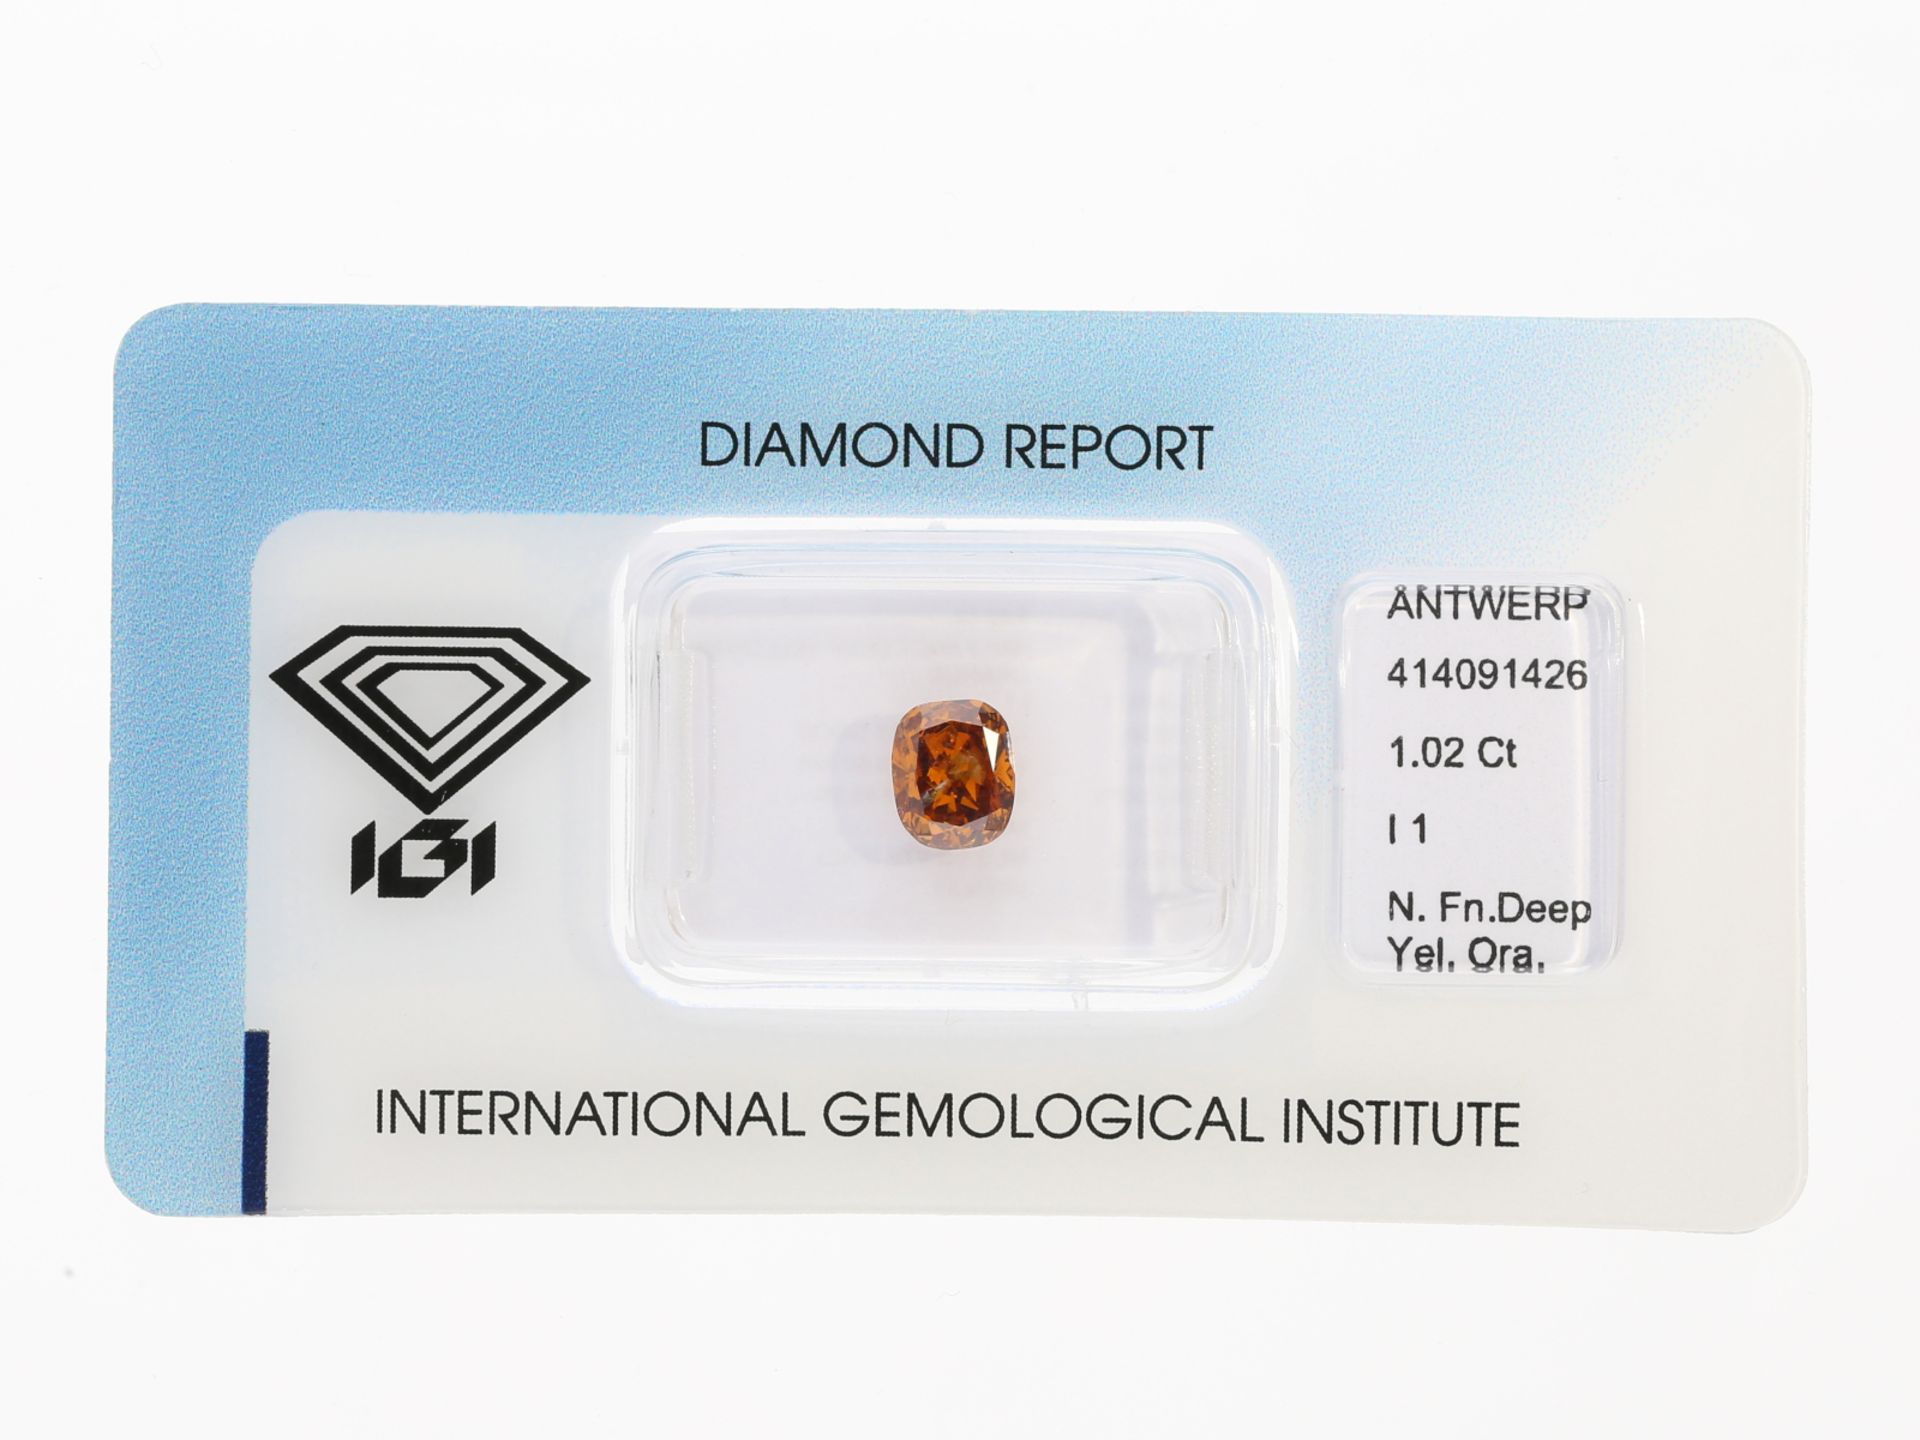 Natürlicher Fancy Diamant im Cushion-Cut, 1,02ct, Farbe Deep Yellowish Orange, mit IGI Report